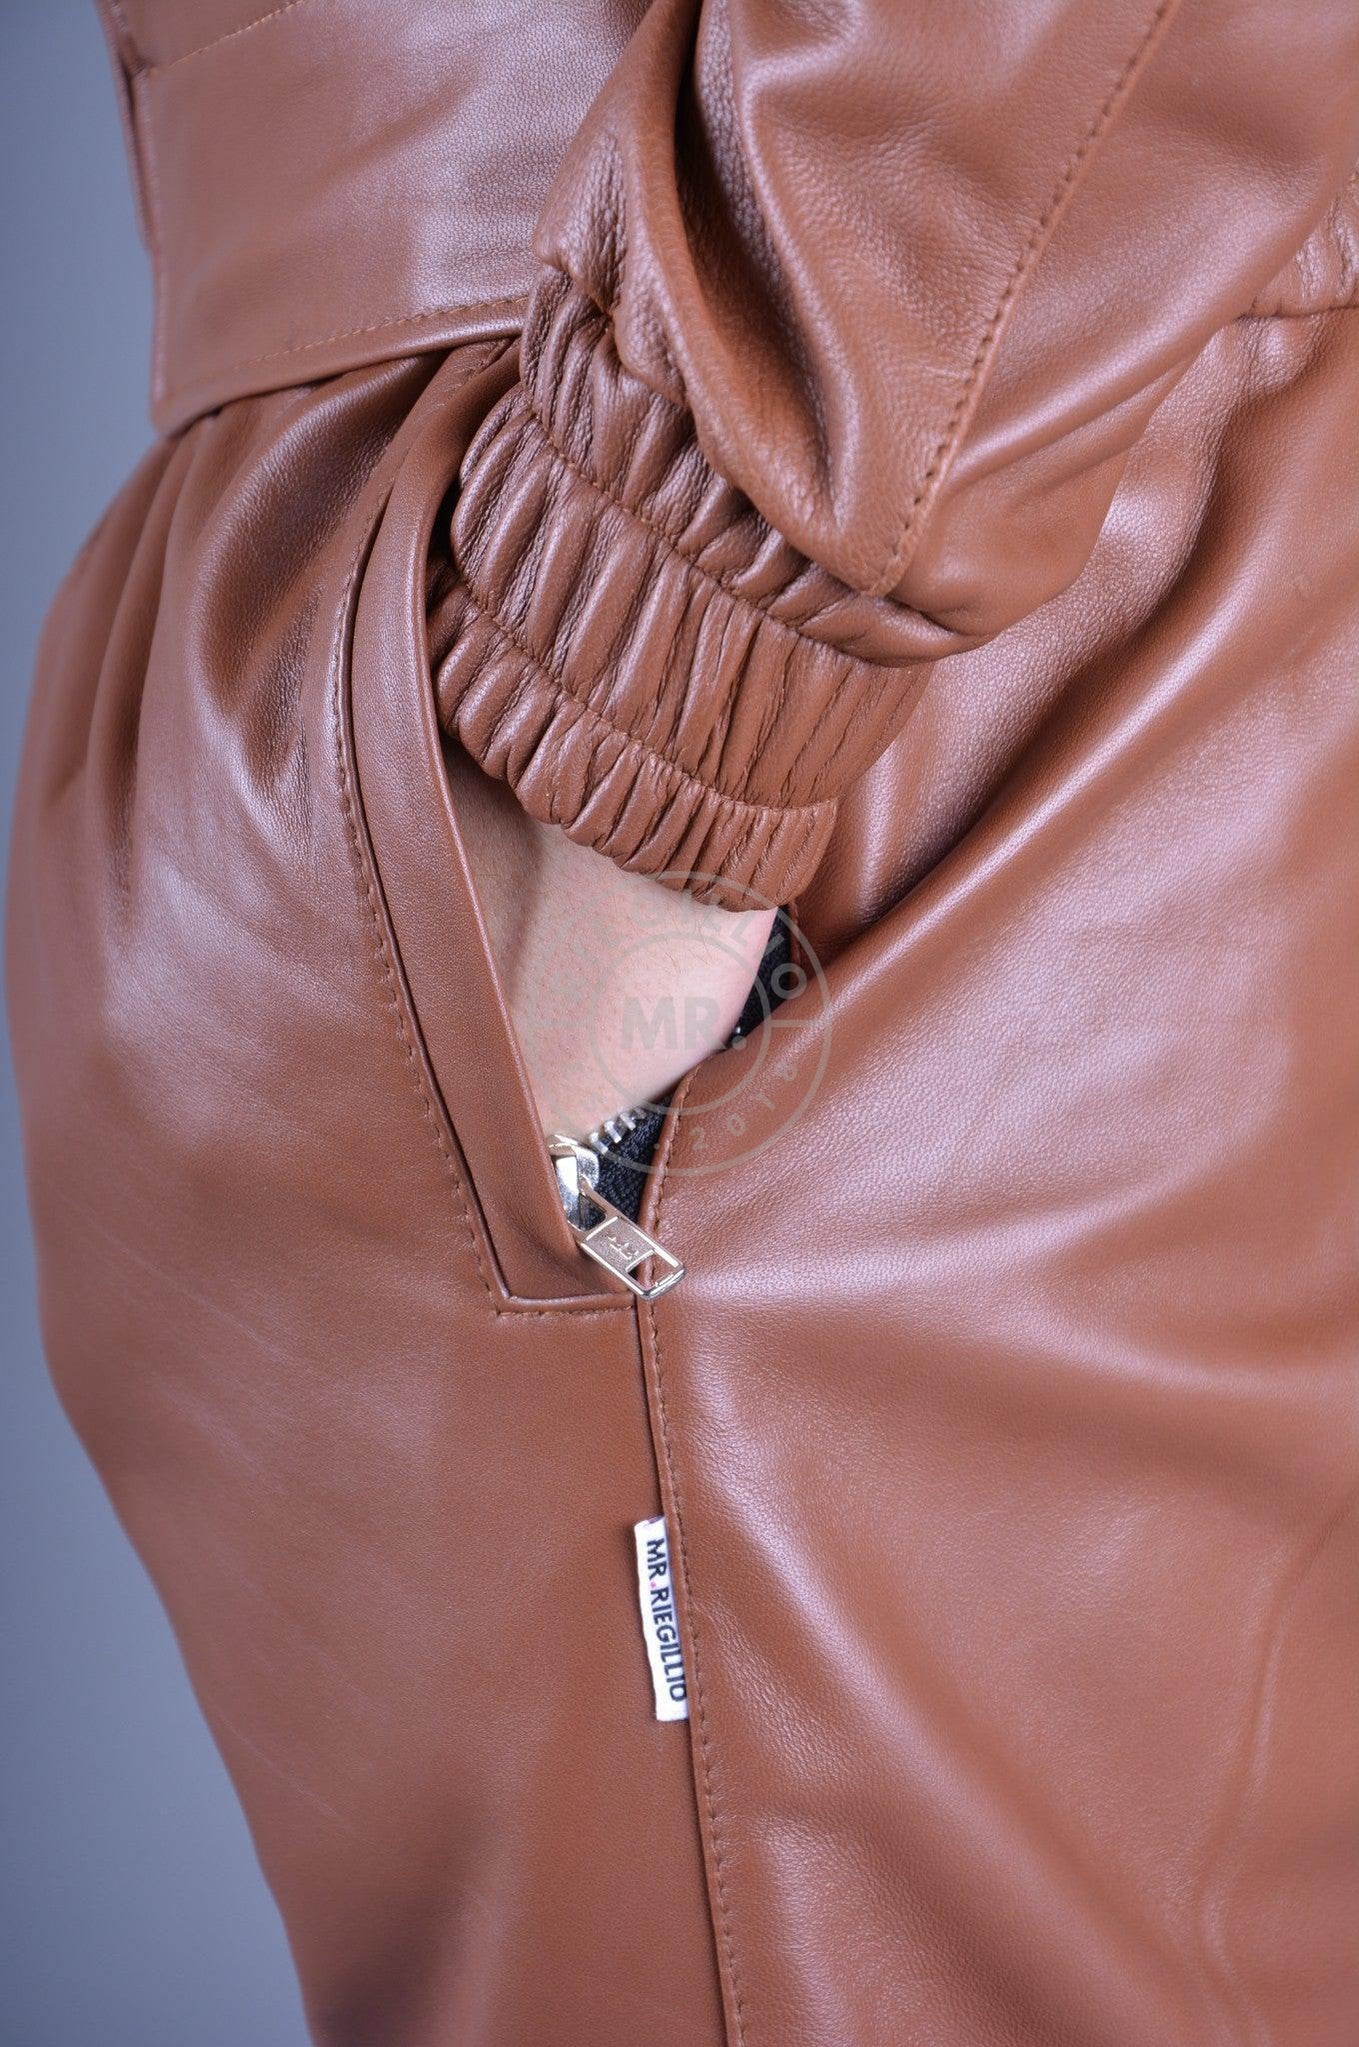 Cinnamon Brown Leather Tracksuit Pants at MR. Riegillio